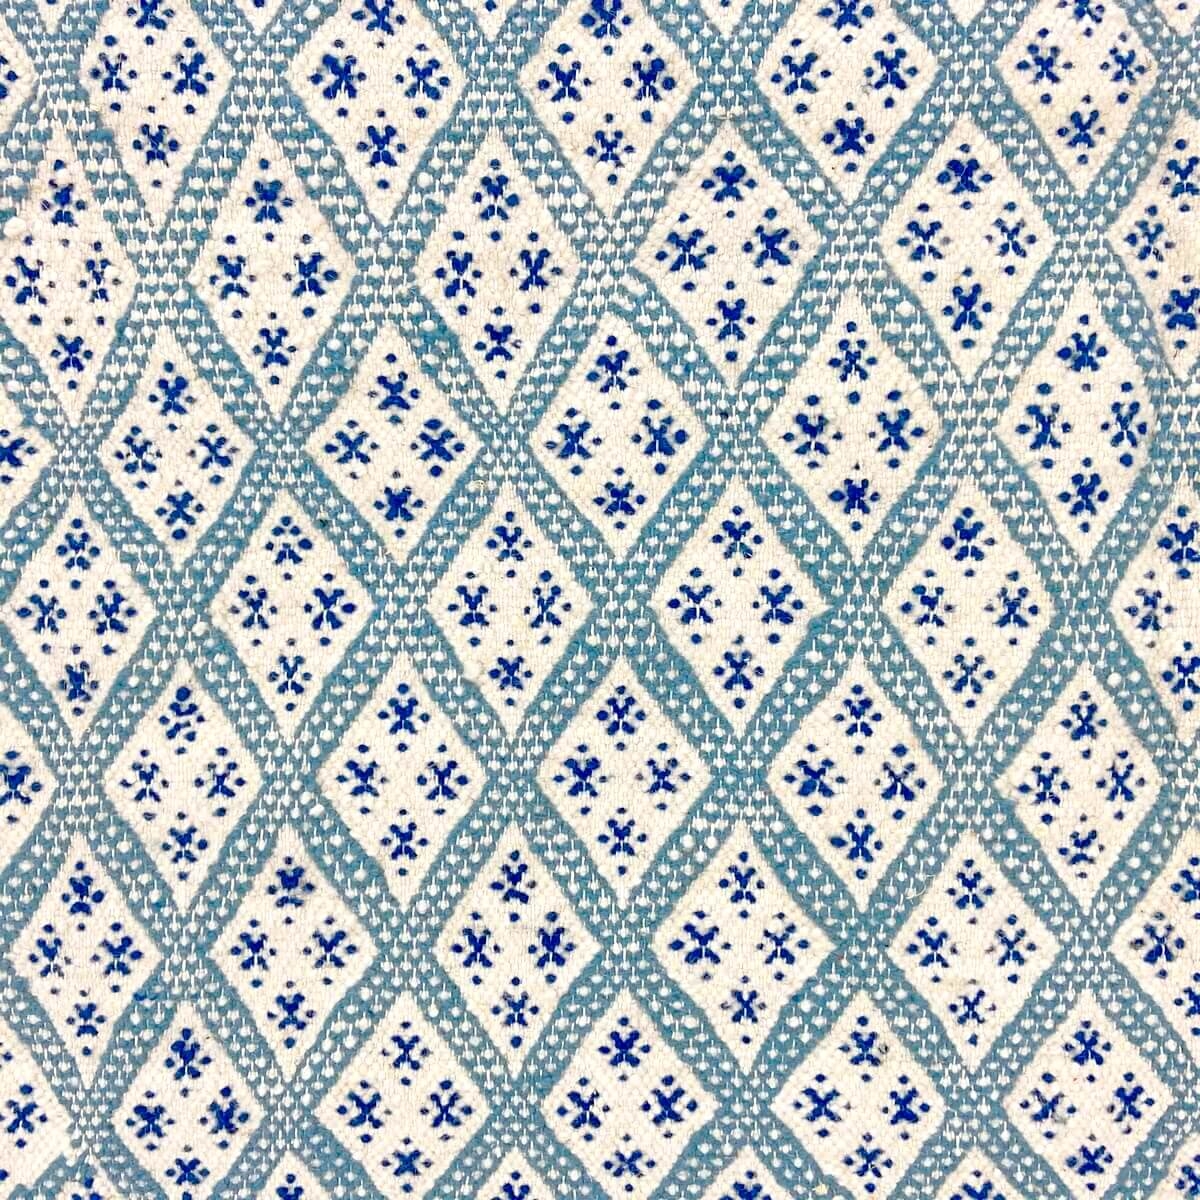 Berber tapijt Tapijt Margoum Ibarkou 155x250 Blauw/Wit (Handgeweven, Wol, Tunesië) Tunesisch Margoum Tapijt uit de stad Kairouan